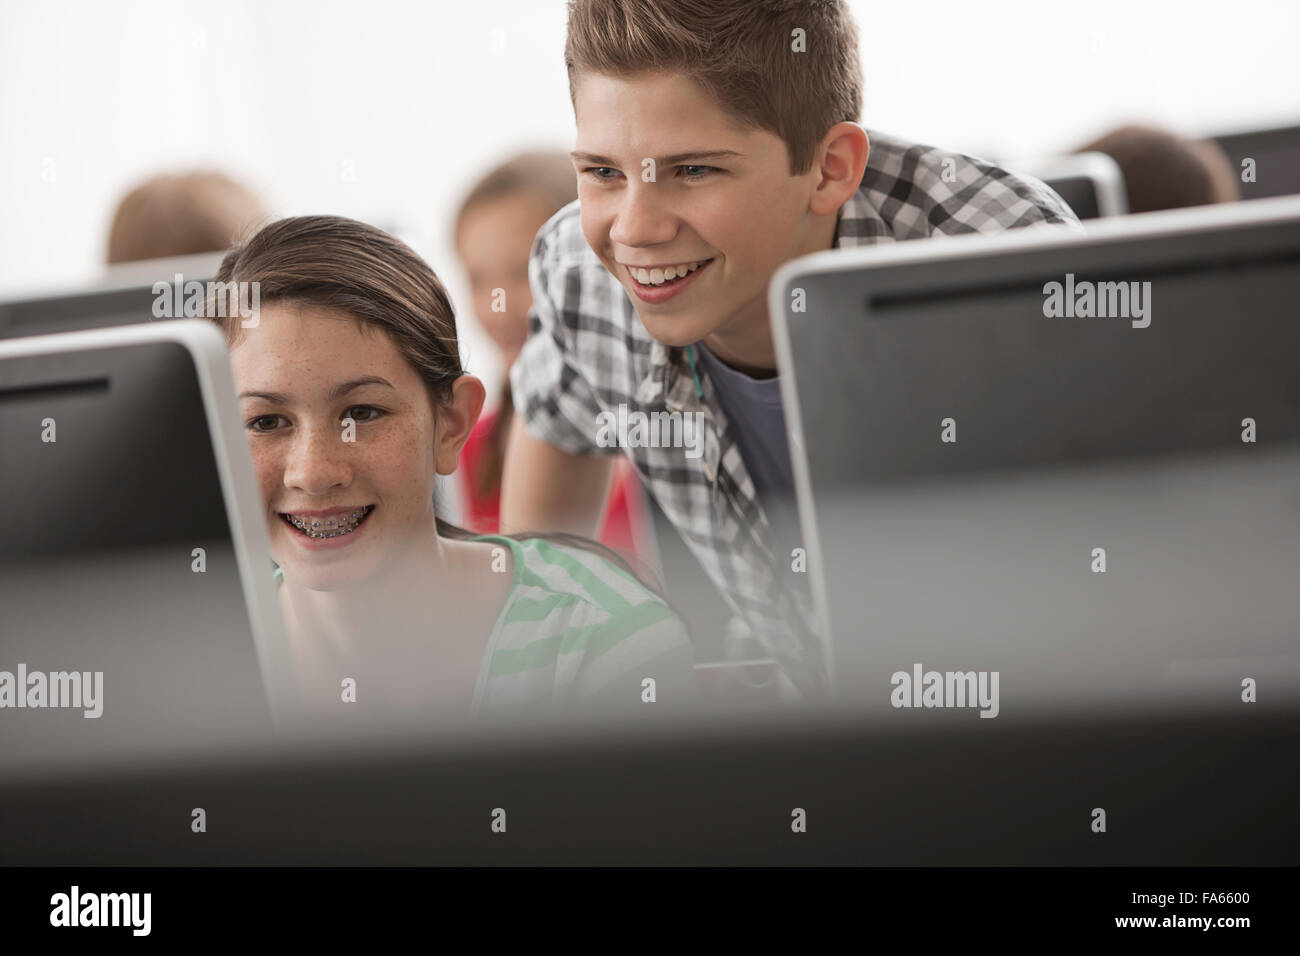 Eine Schule Computer Lab Raum, mit Reihen von Bildschirmen. Zwei Jugendliche Blick unverwandt auf dem Bildschirm. Stockfoto